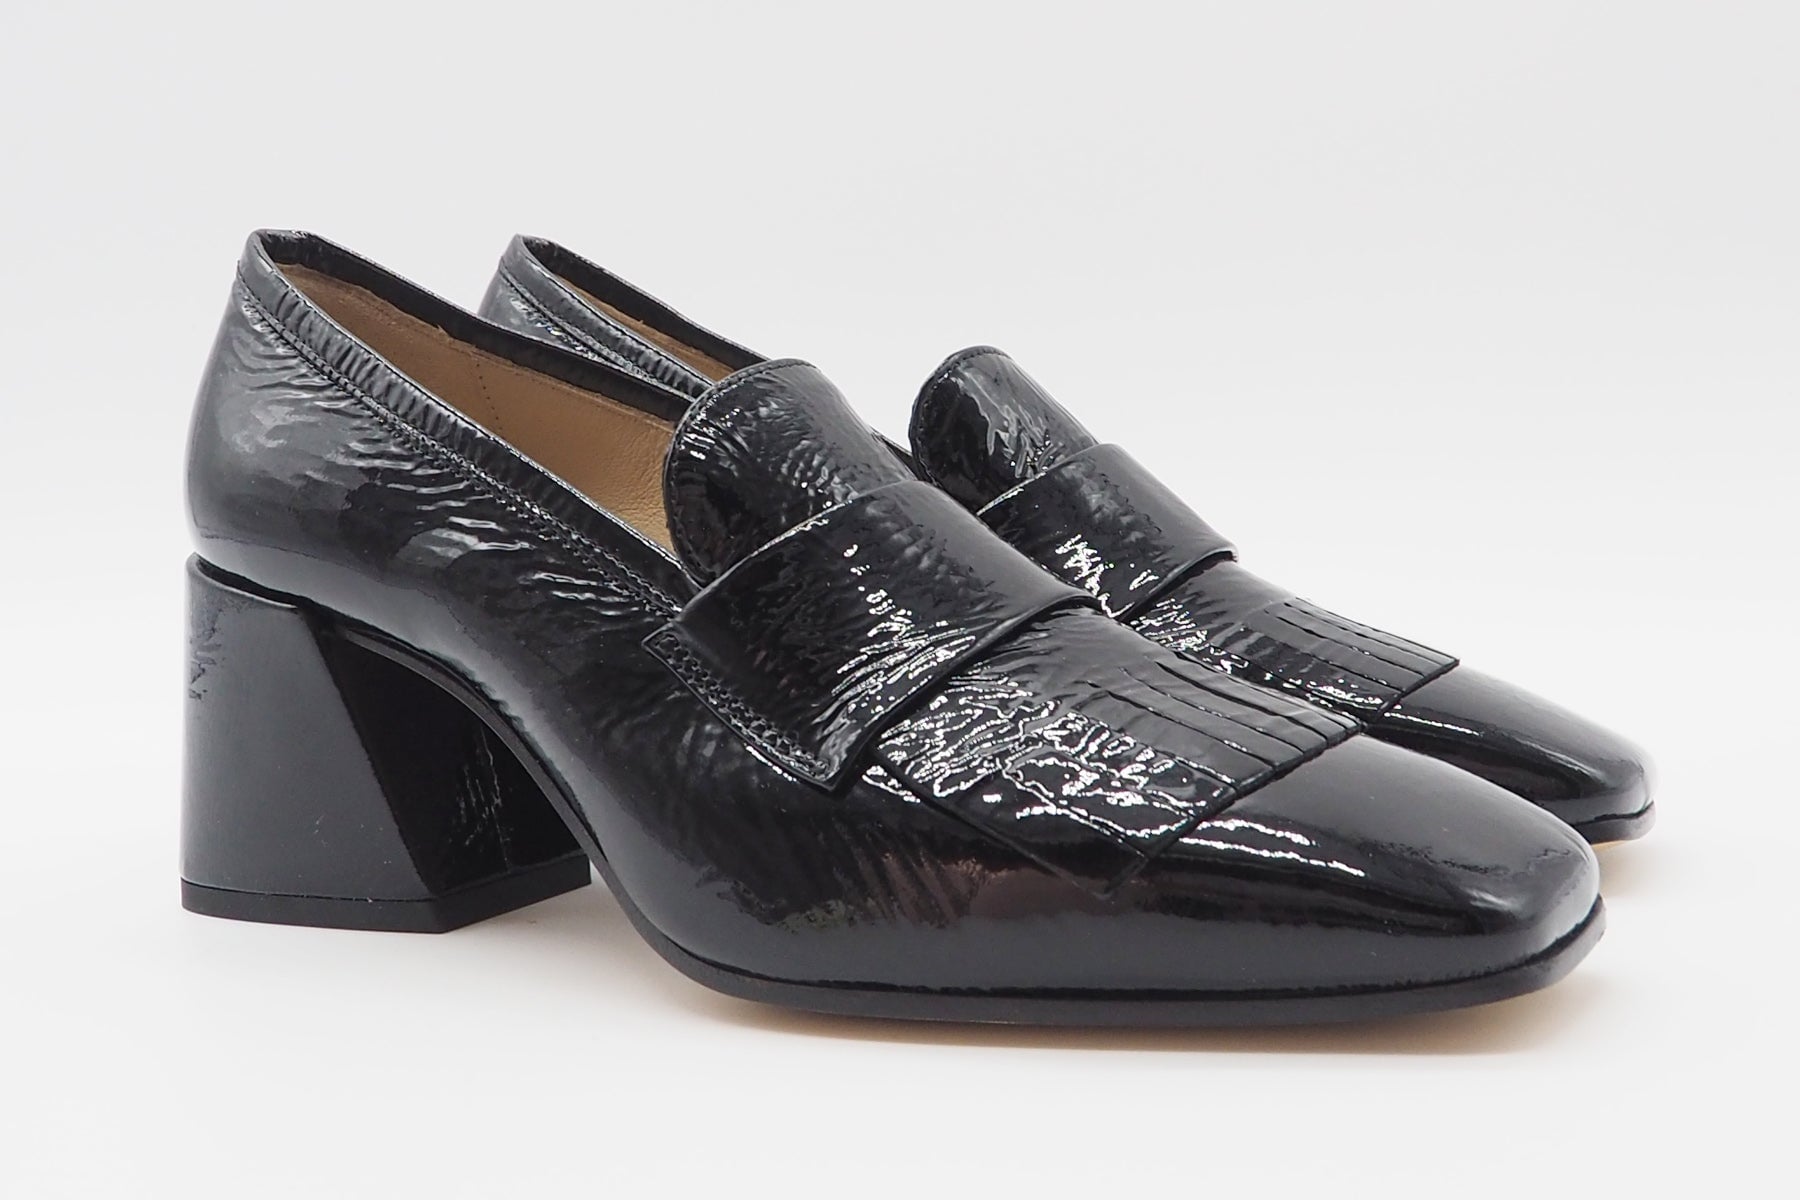 Damen Absatz-Loafer aus Lackleder in Schwarz mit Fransen - Absatz 6cm Damen Loafers & Schnürer Pomme D'or 